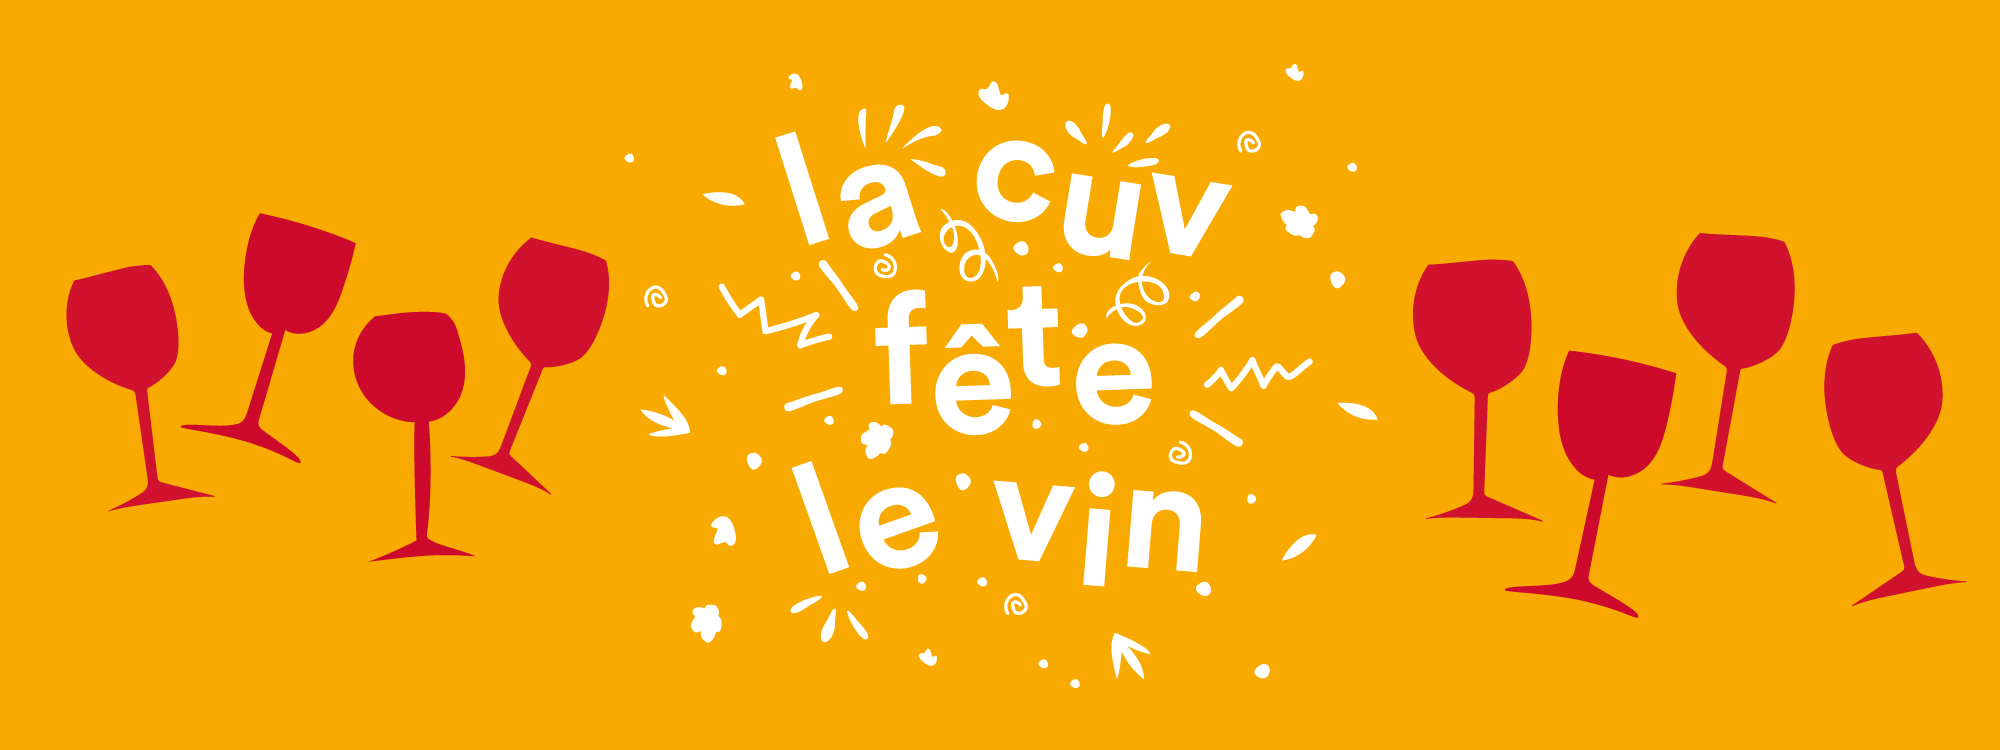 La CUV fête le vin. Photo de couverture jaune.